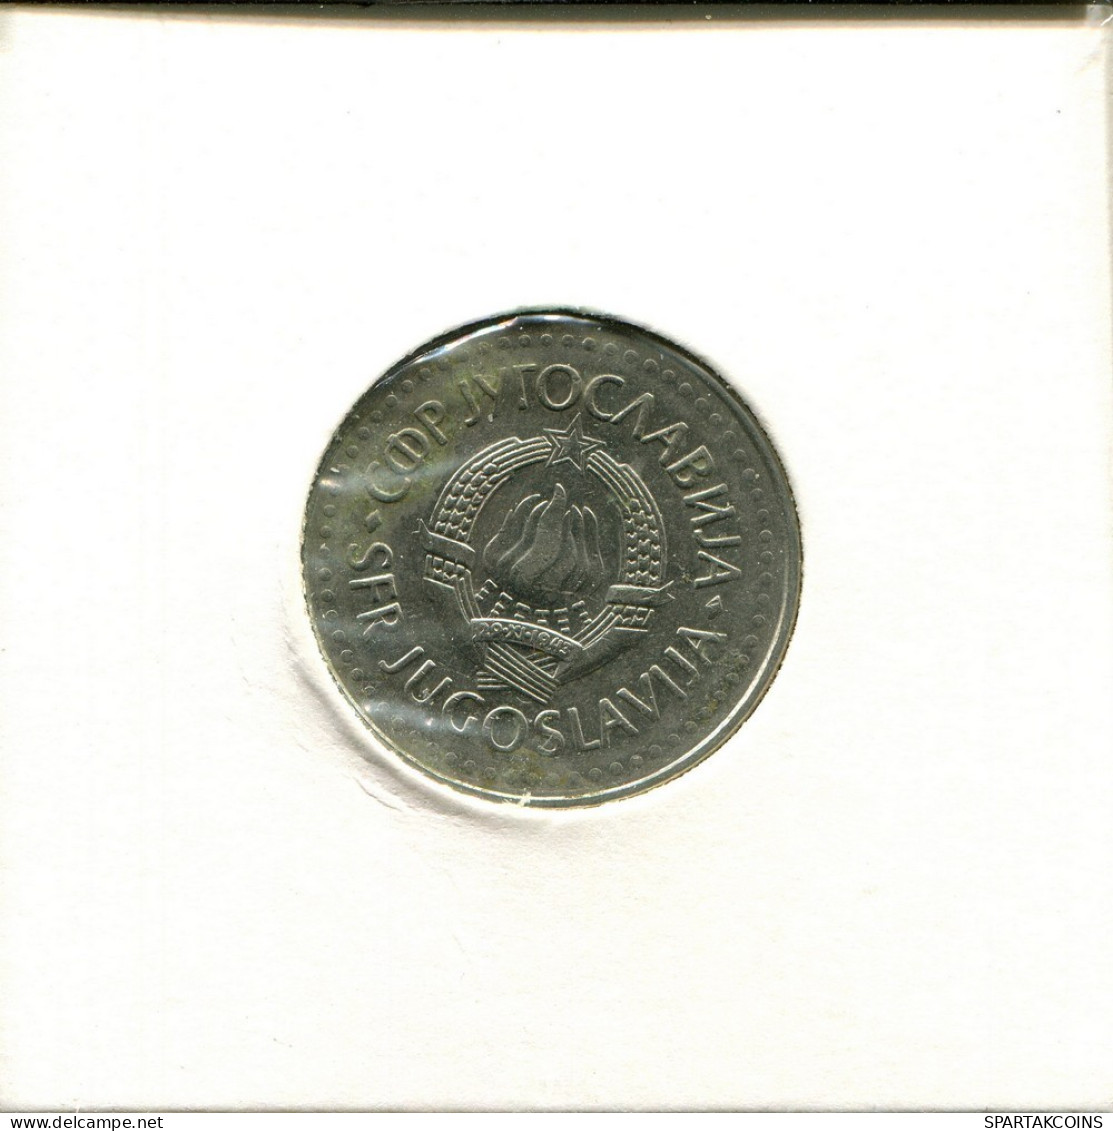 10 DINARA 1985 YUGOSLAVIA Moneda #AV160.E.A - Jugoslawien